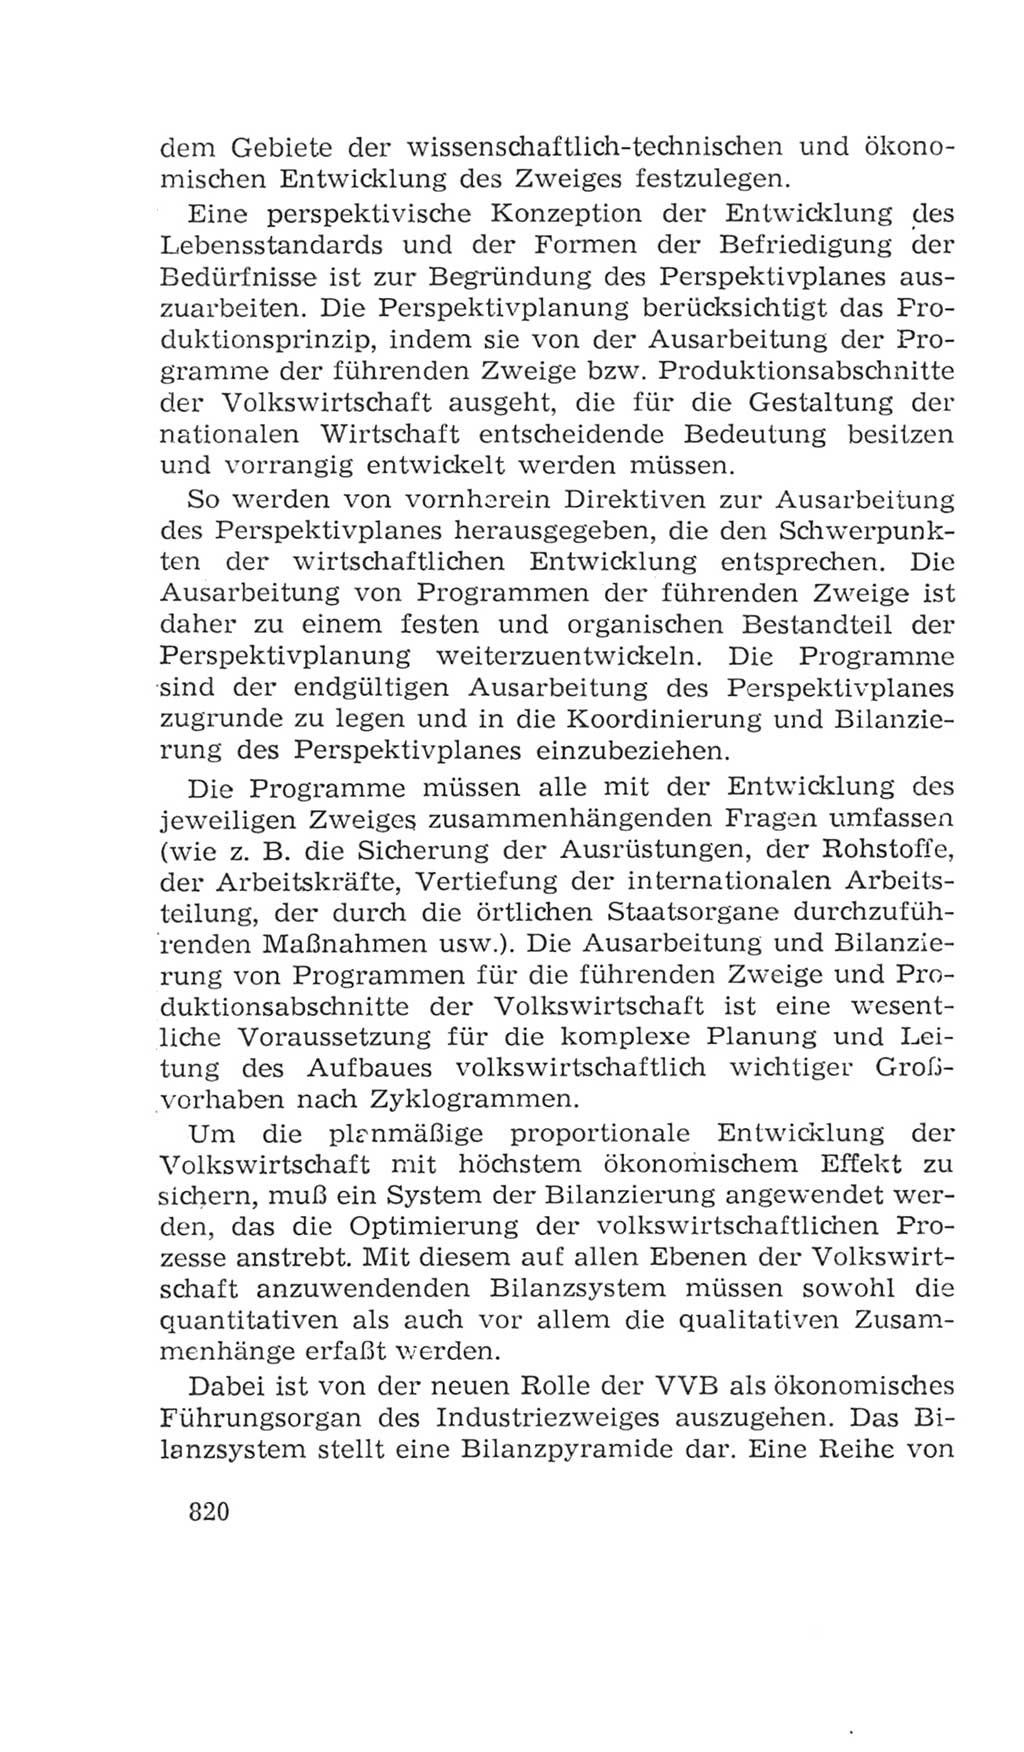 Volkskammer (VK) der Deutschen Demokratischen Republik (DDR), 4. Wahlperiode 1963-1967, Seite 820 (VK. DDR 4. WP. 1963-1967, S. 820)